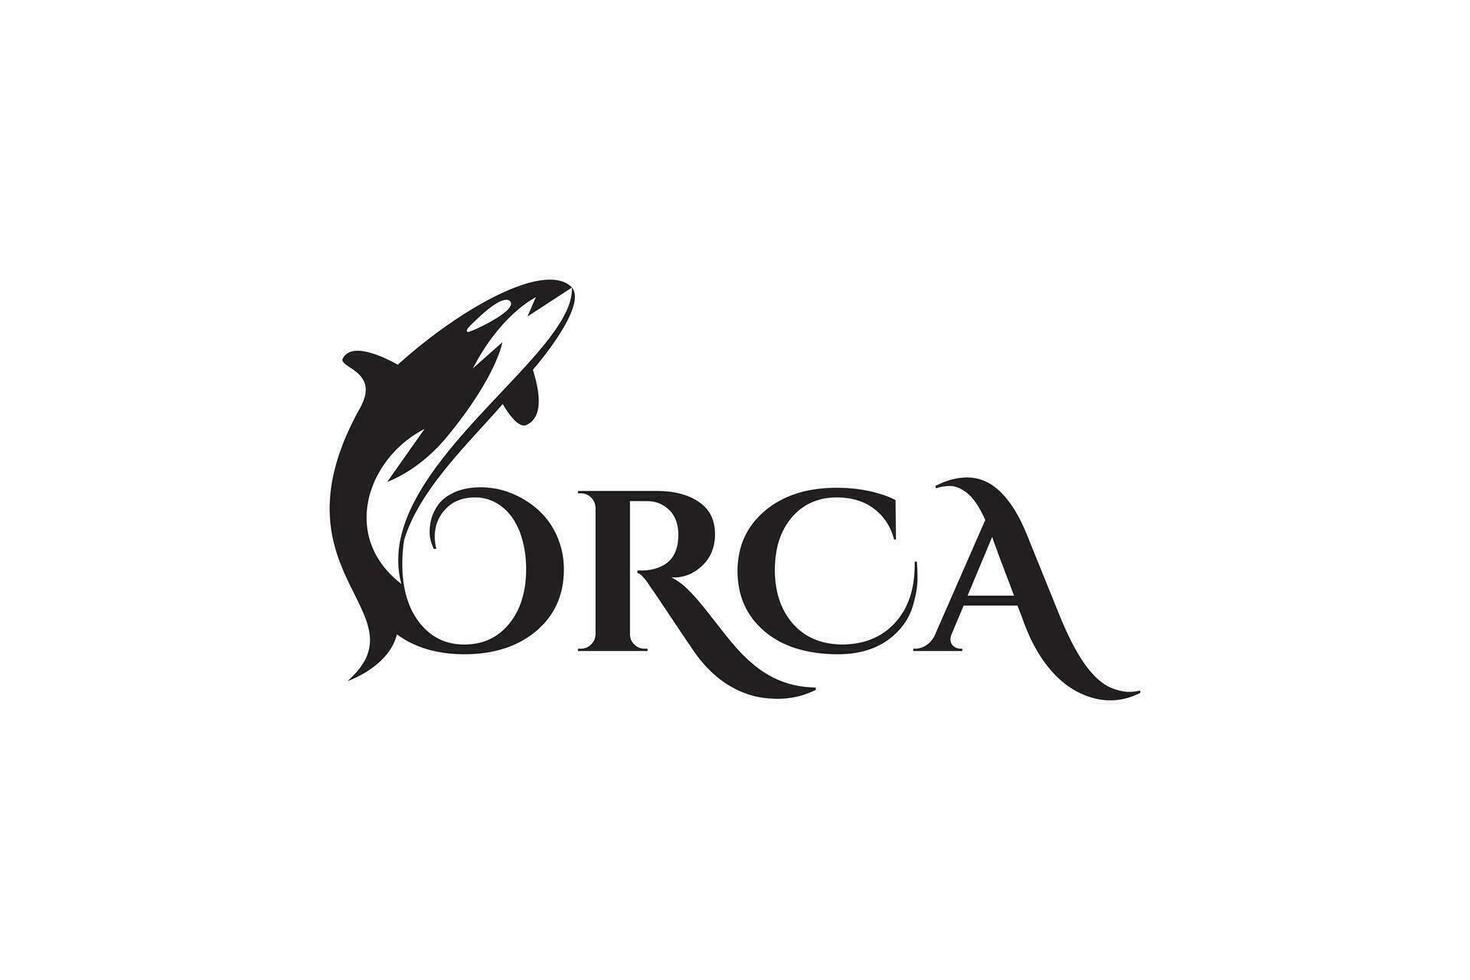 Orca whale logo design vector template